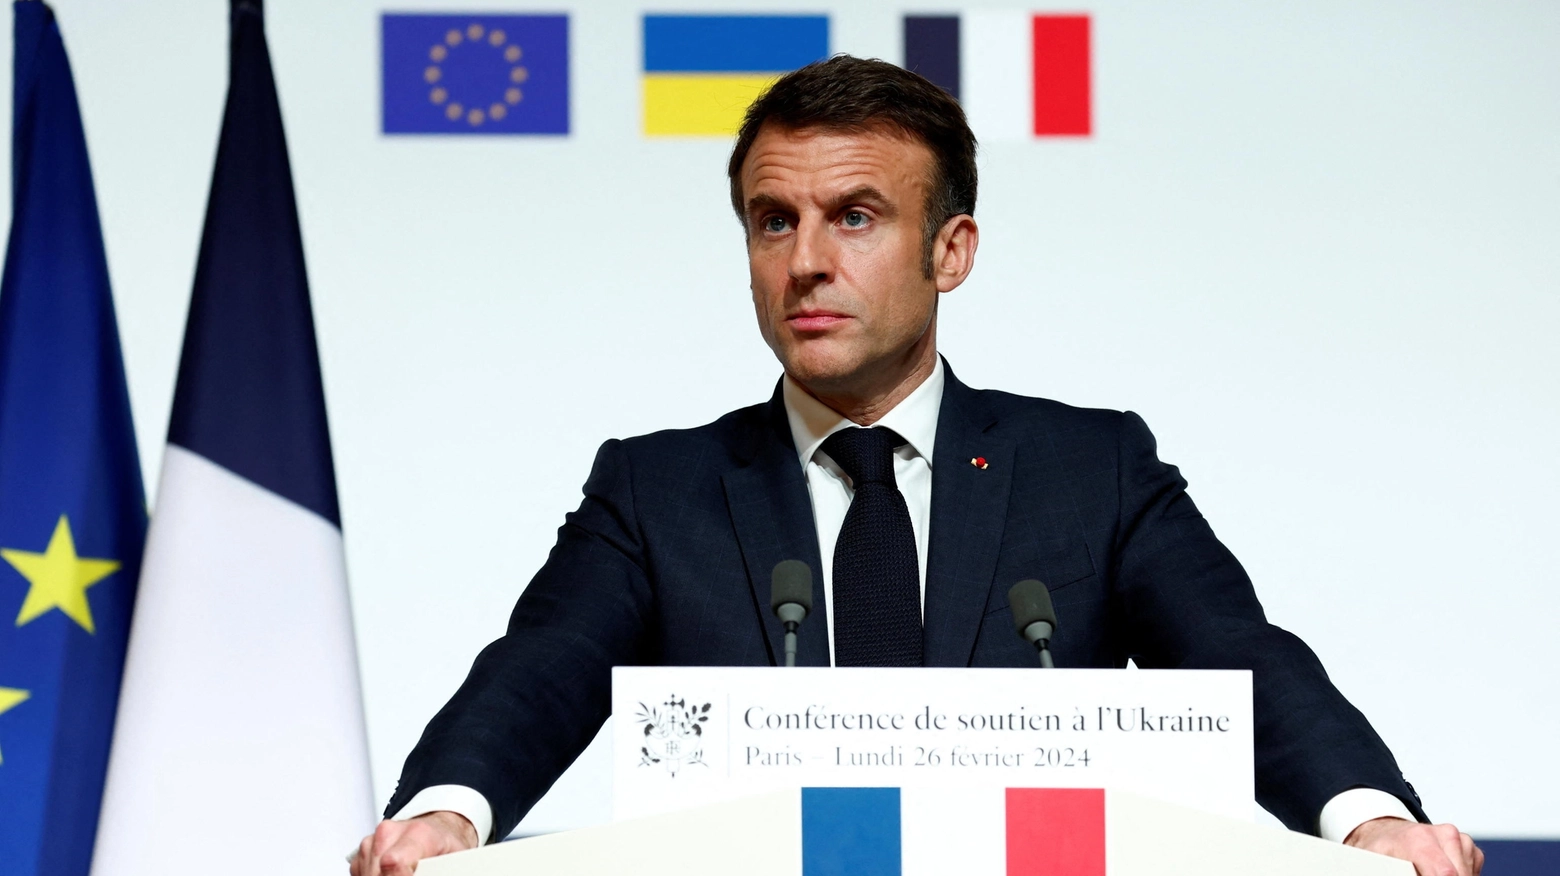 Il presidente francese: “Faremo tutto quello che c'è da fare affinché la Russia non possa vincere questa guerra”. Ma gli alleati e la Nato frenano